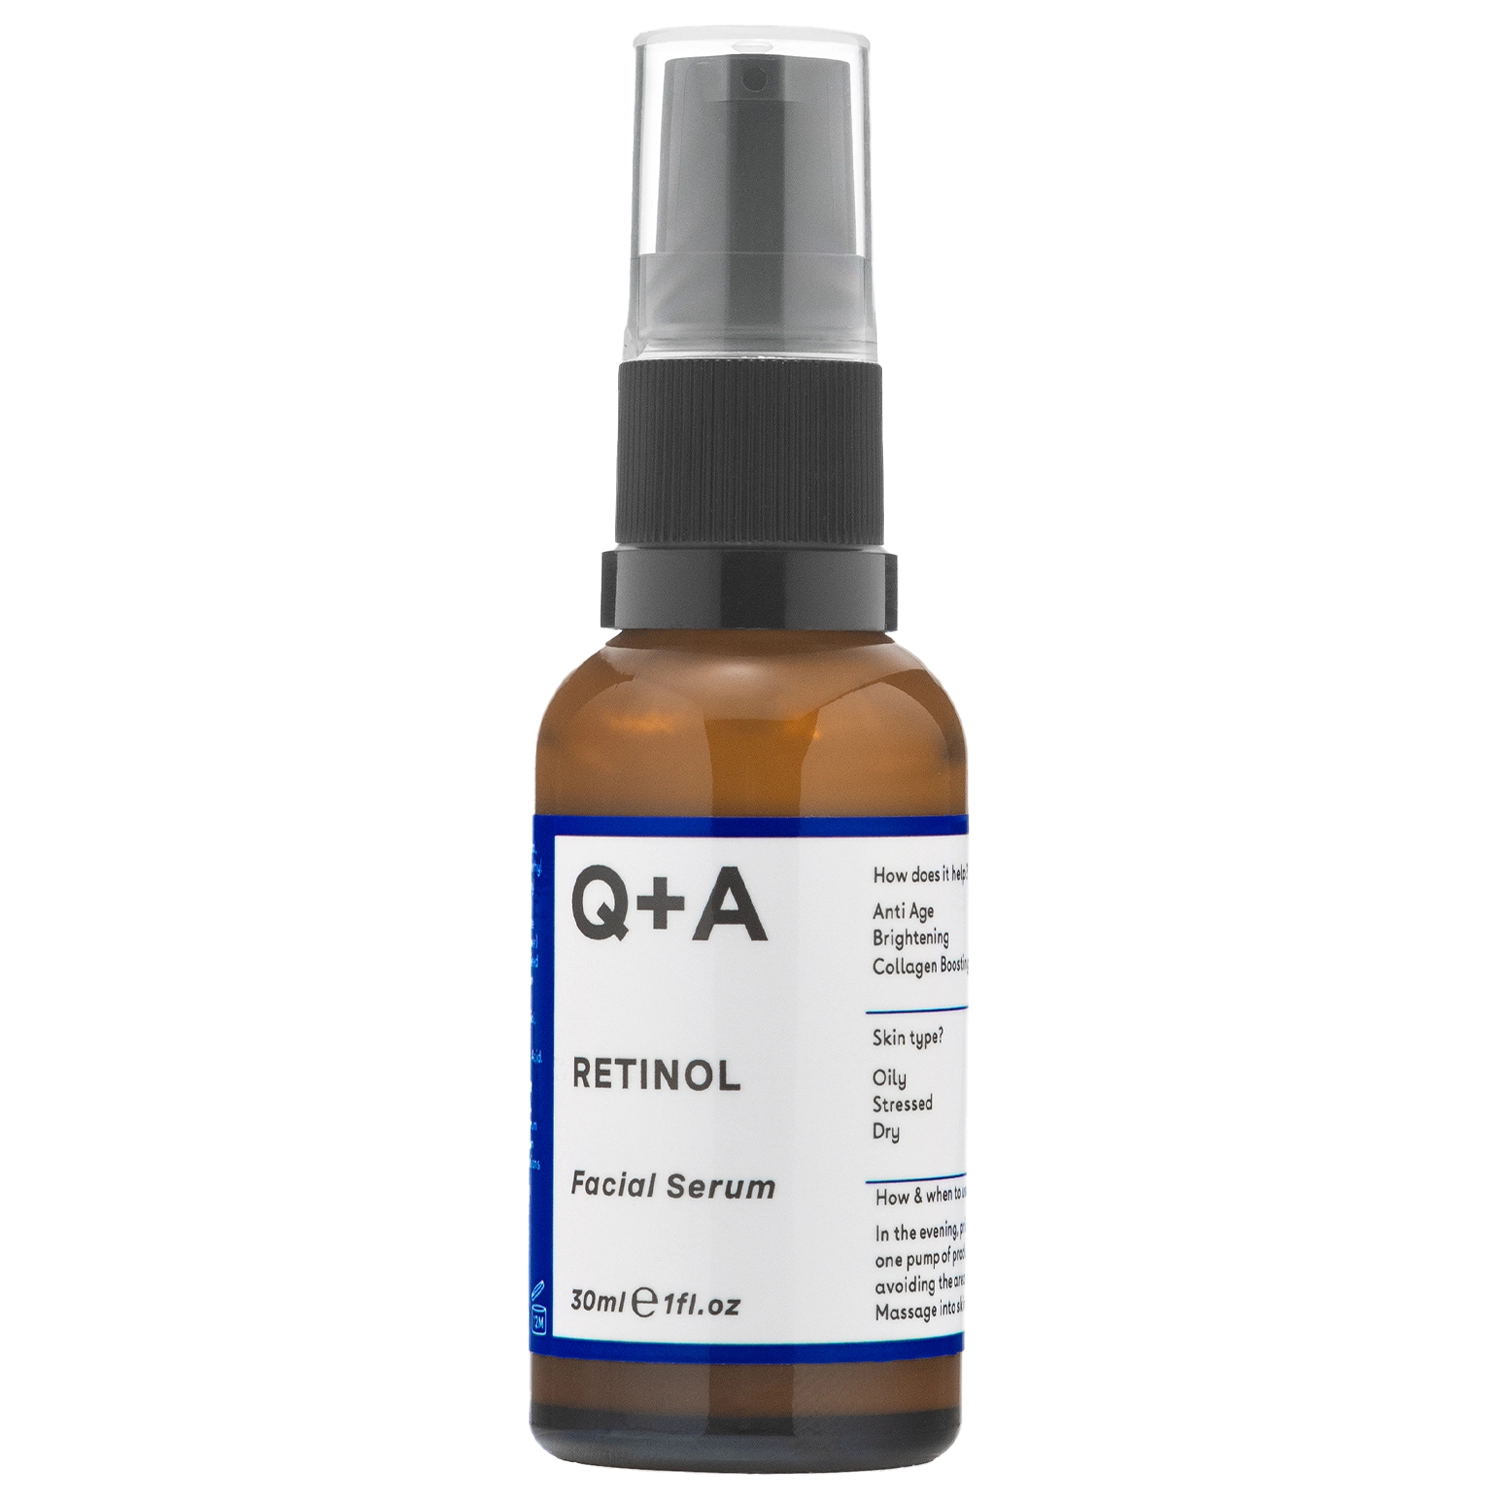 Q+A - Retinol 0.2% Serum - Senėjimą stabdantis veido serumas su retinoliu - 30ml